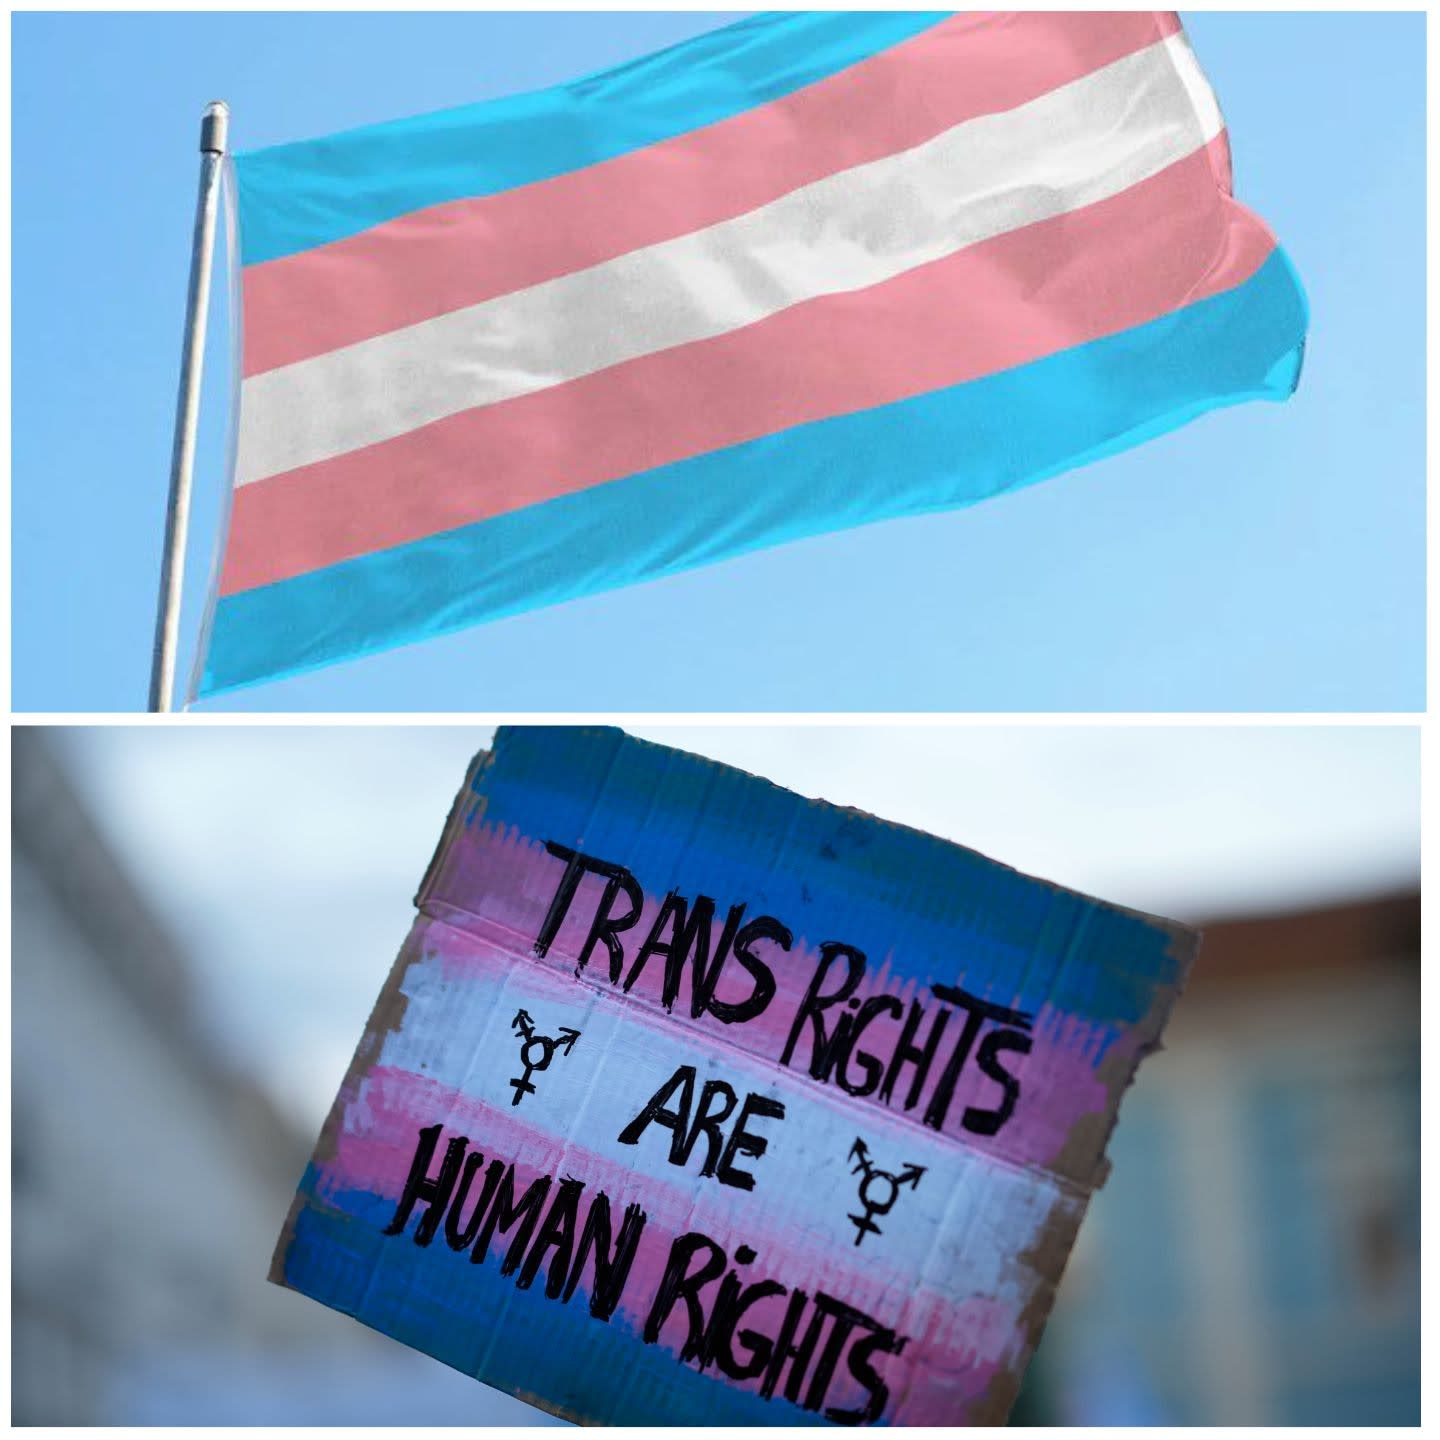 Transgender people seek name change privacy